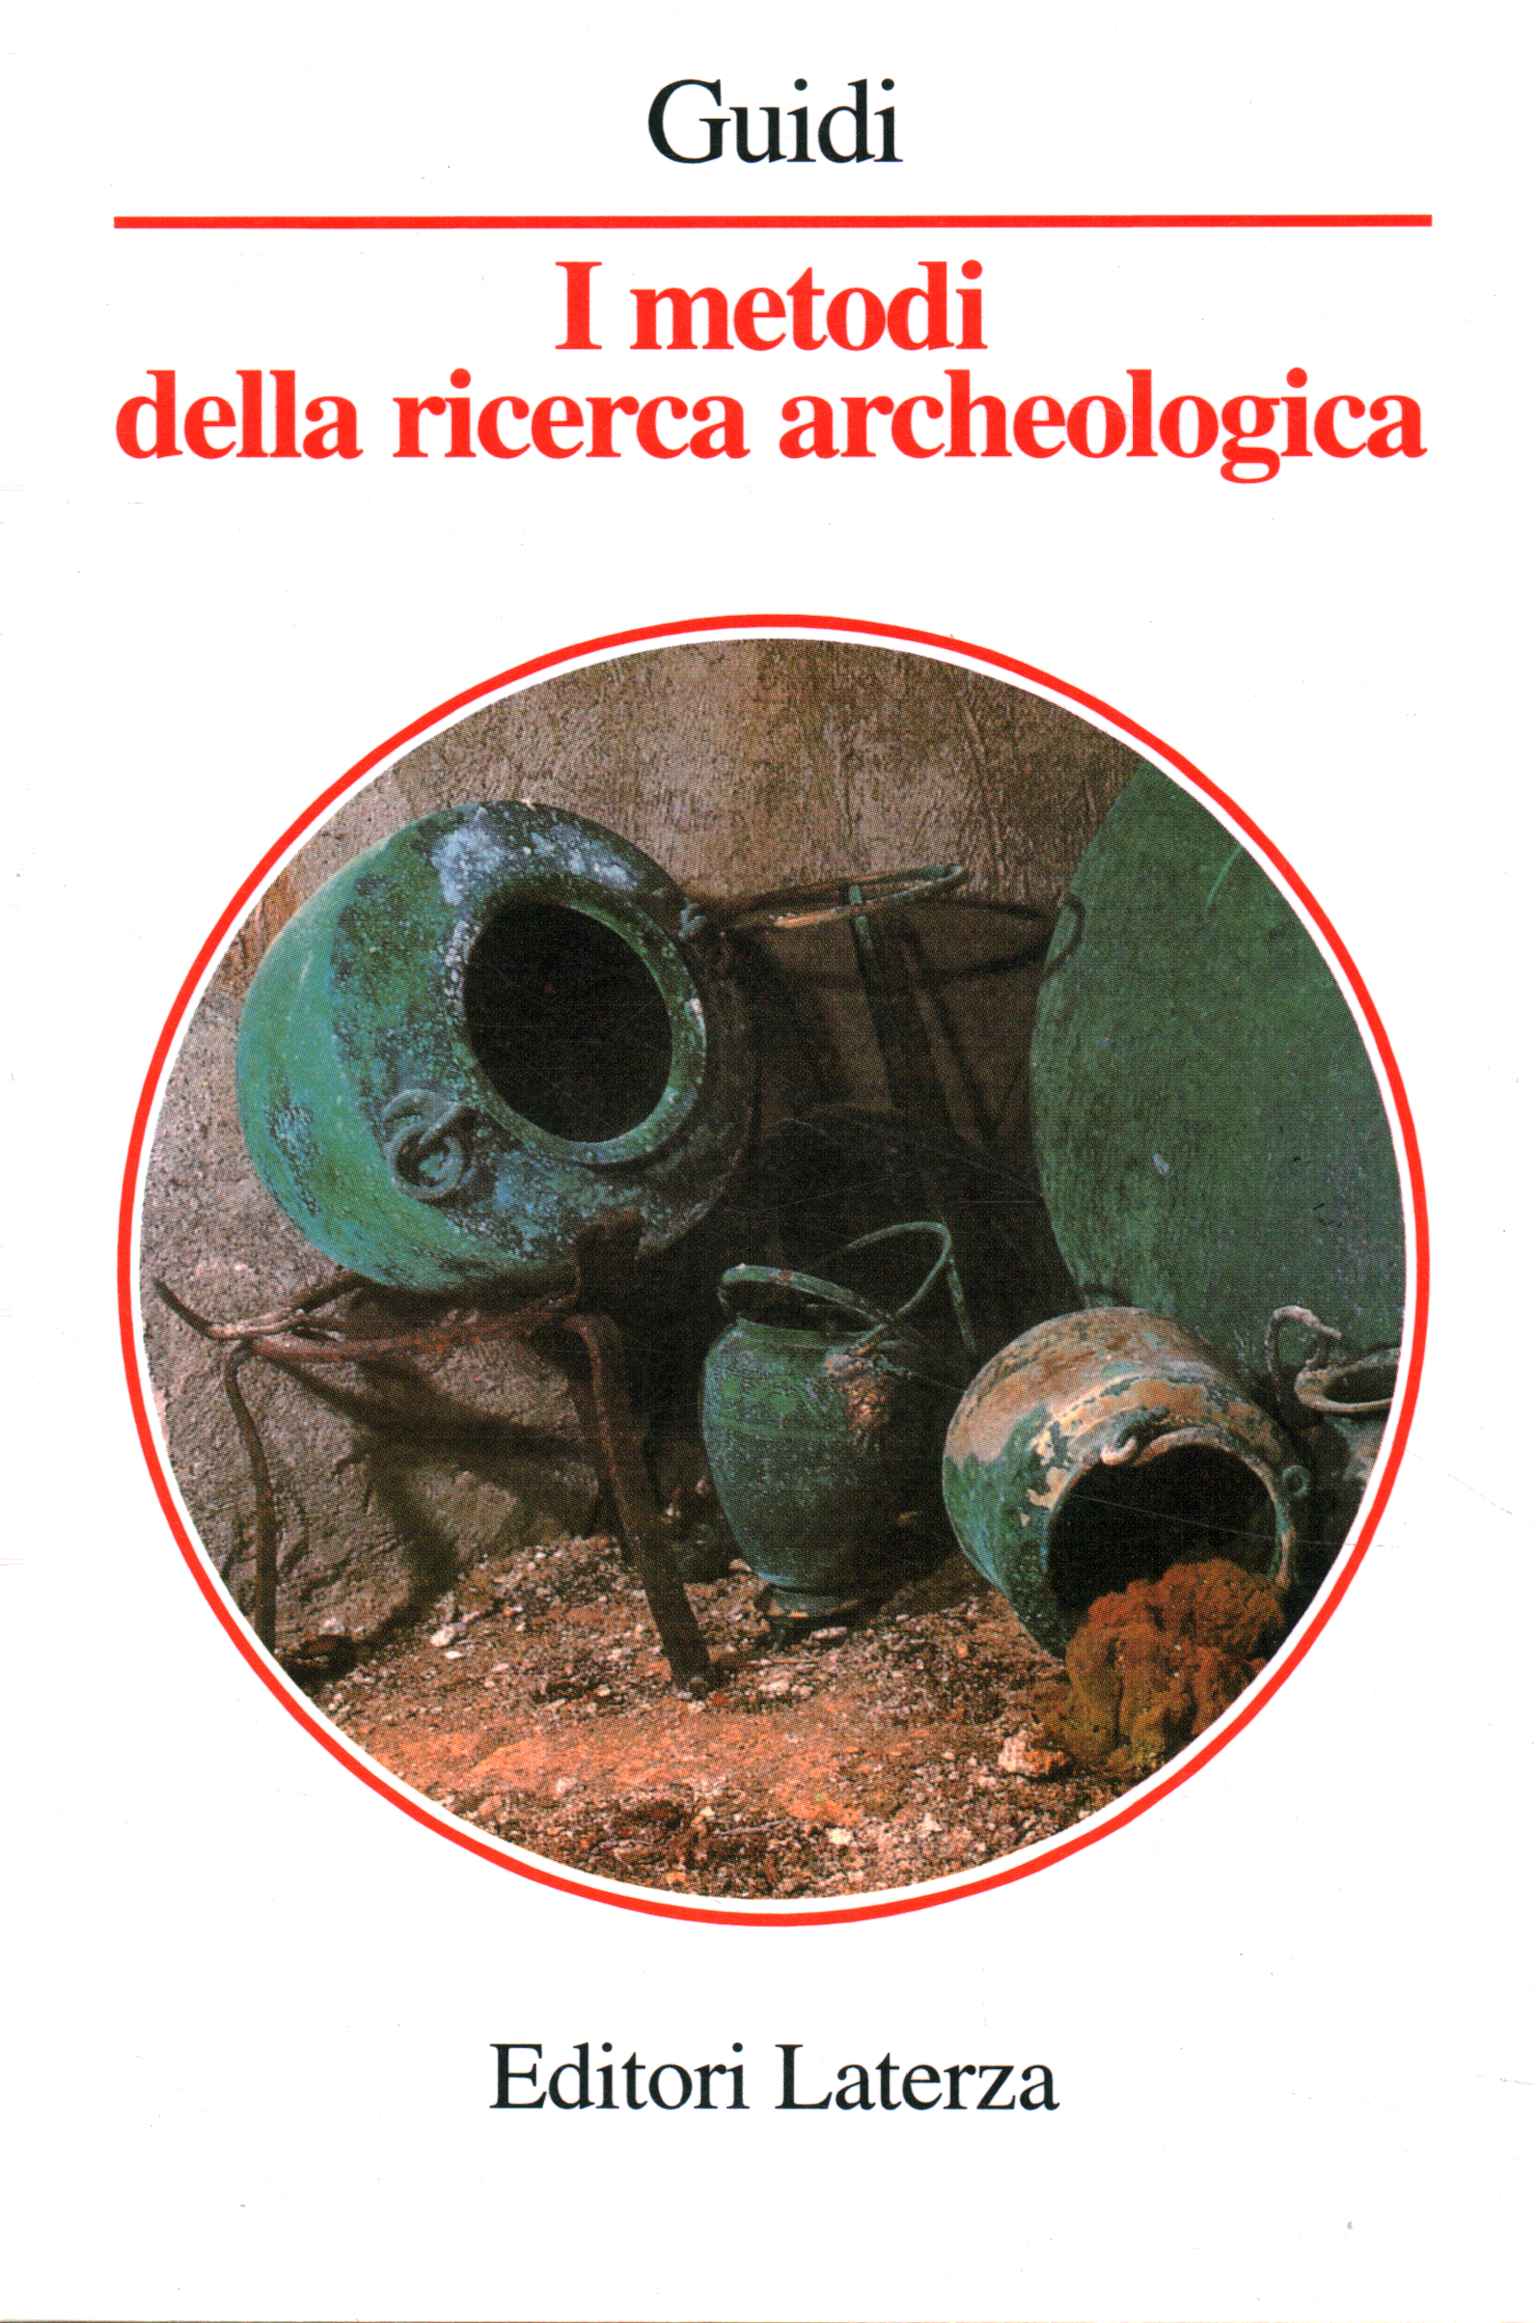 Die Methoden der archäologischen Forschung